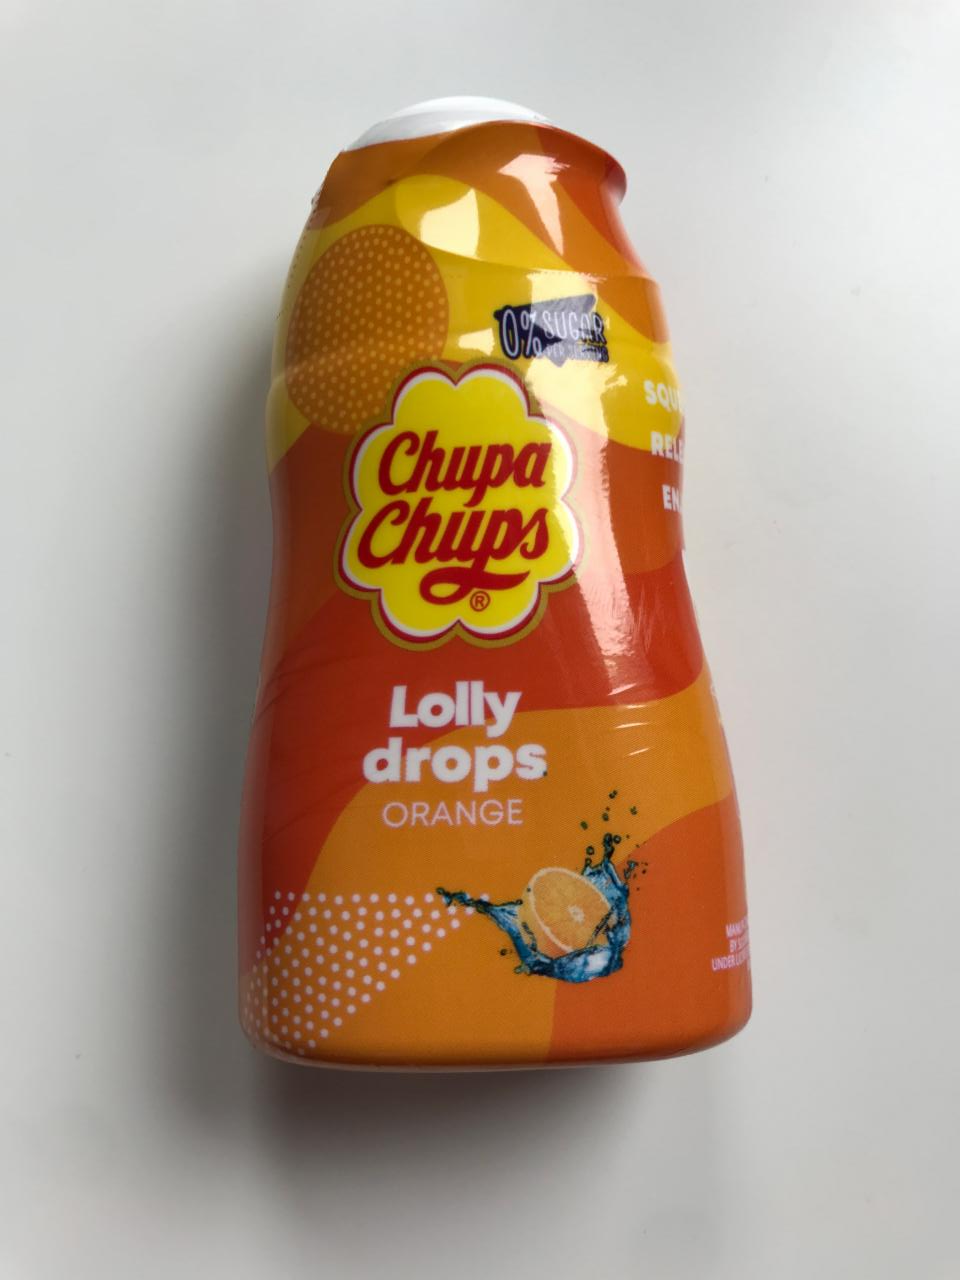 Fotografie - Chupa chups lolly drops orange zero sugar